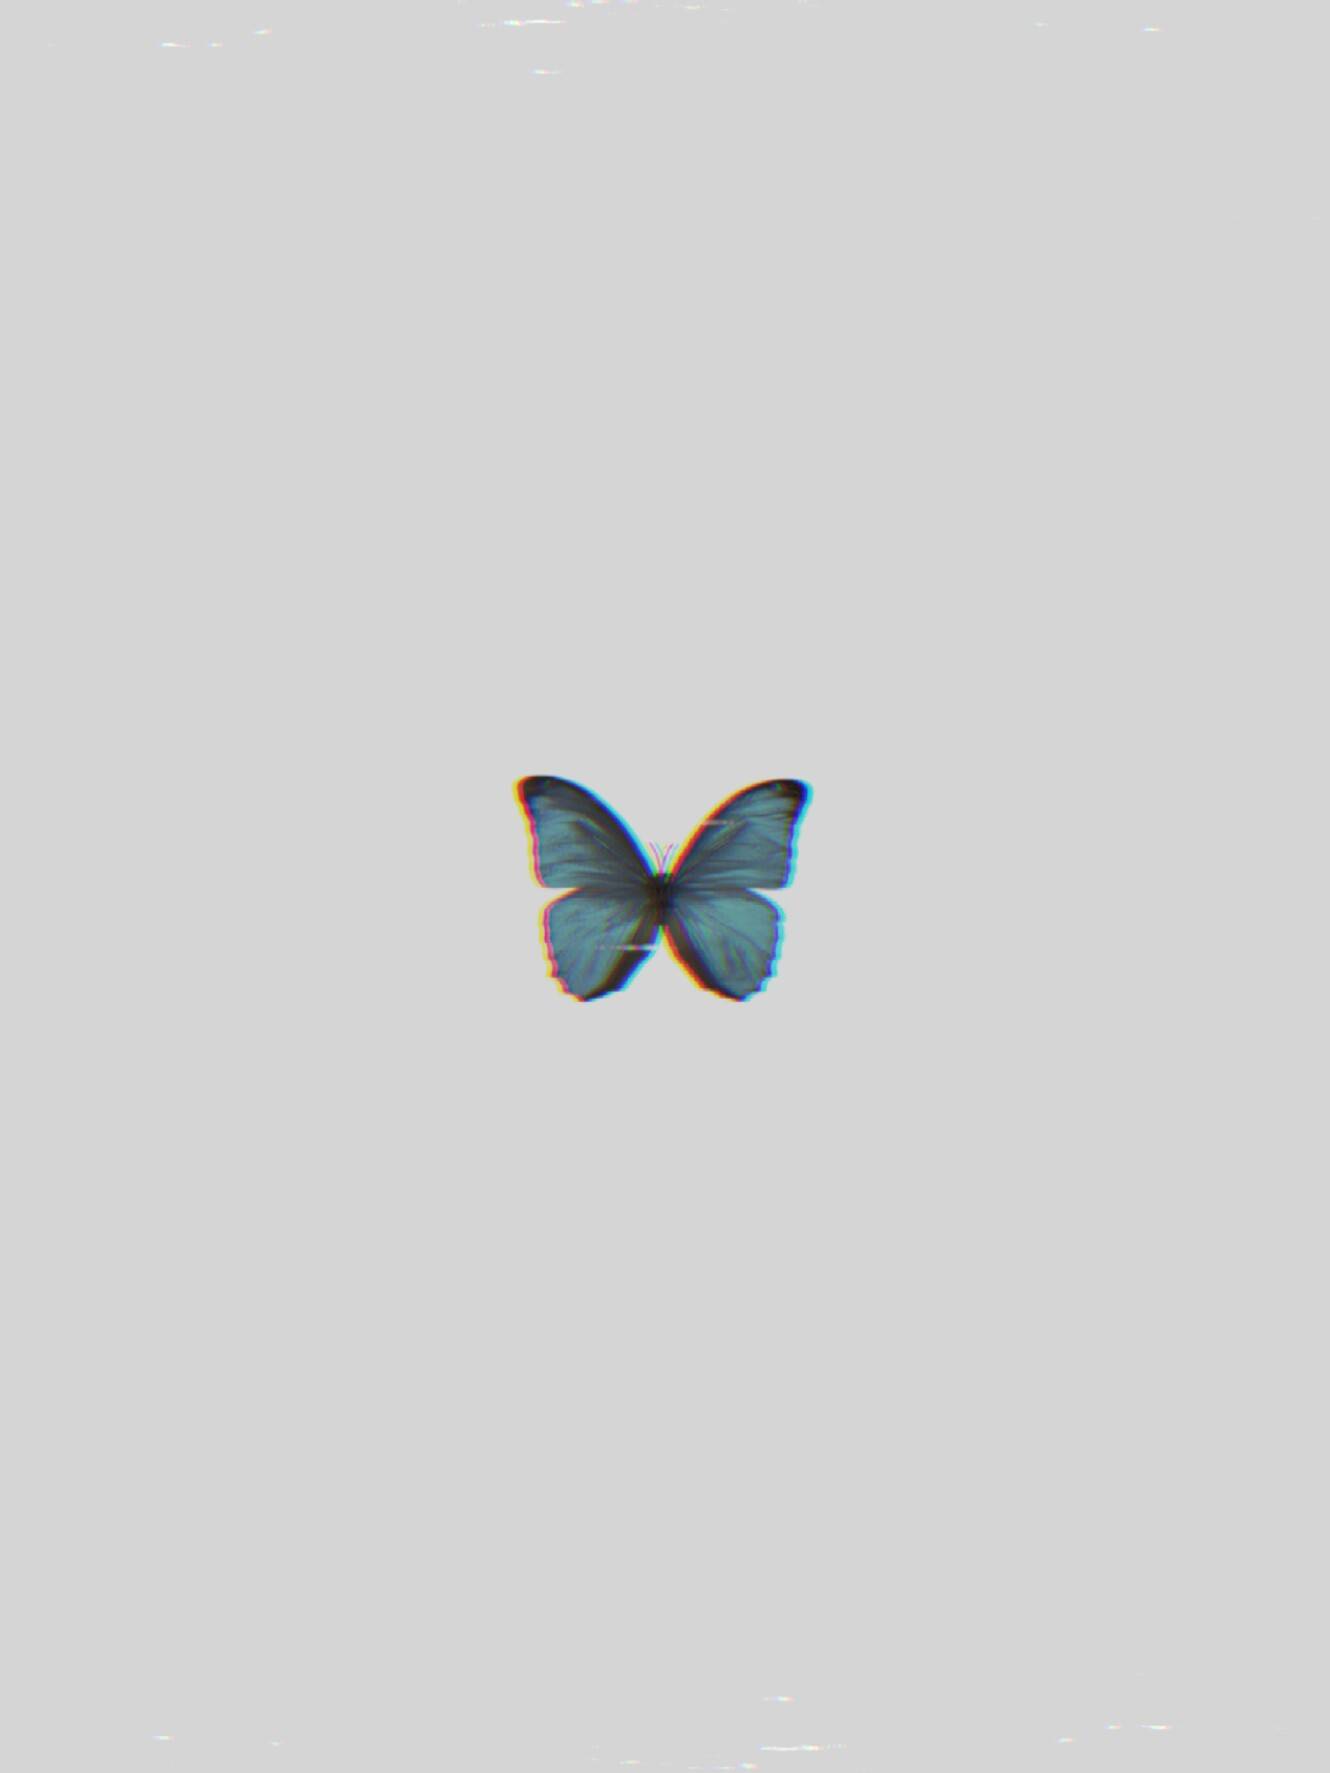 Butterfly Wallpaper Vhs